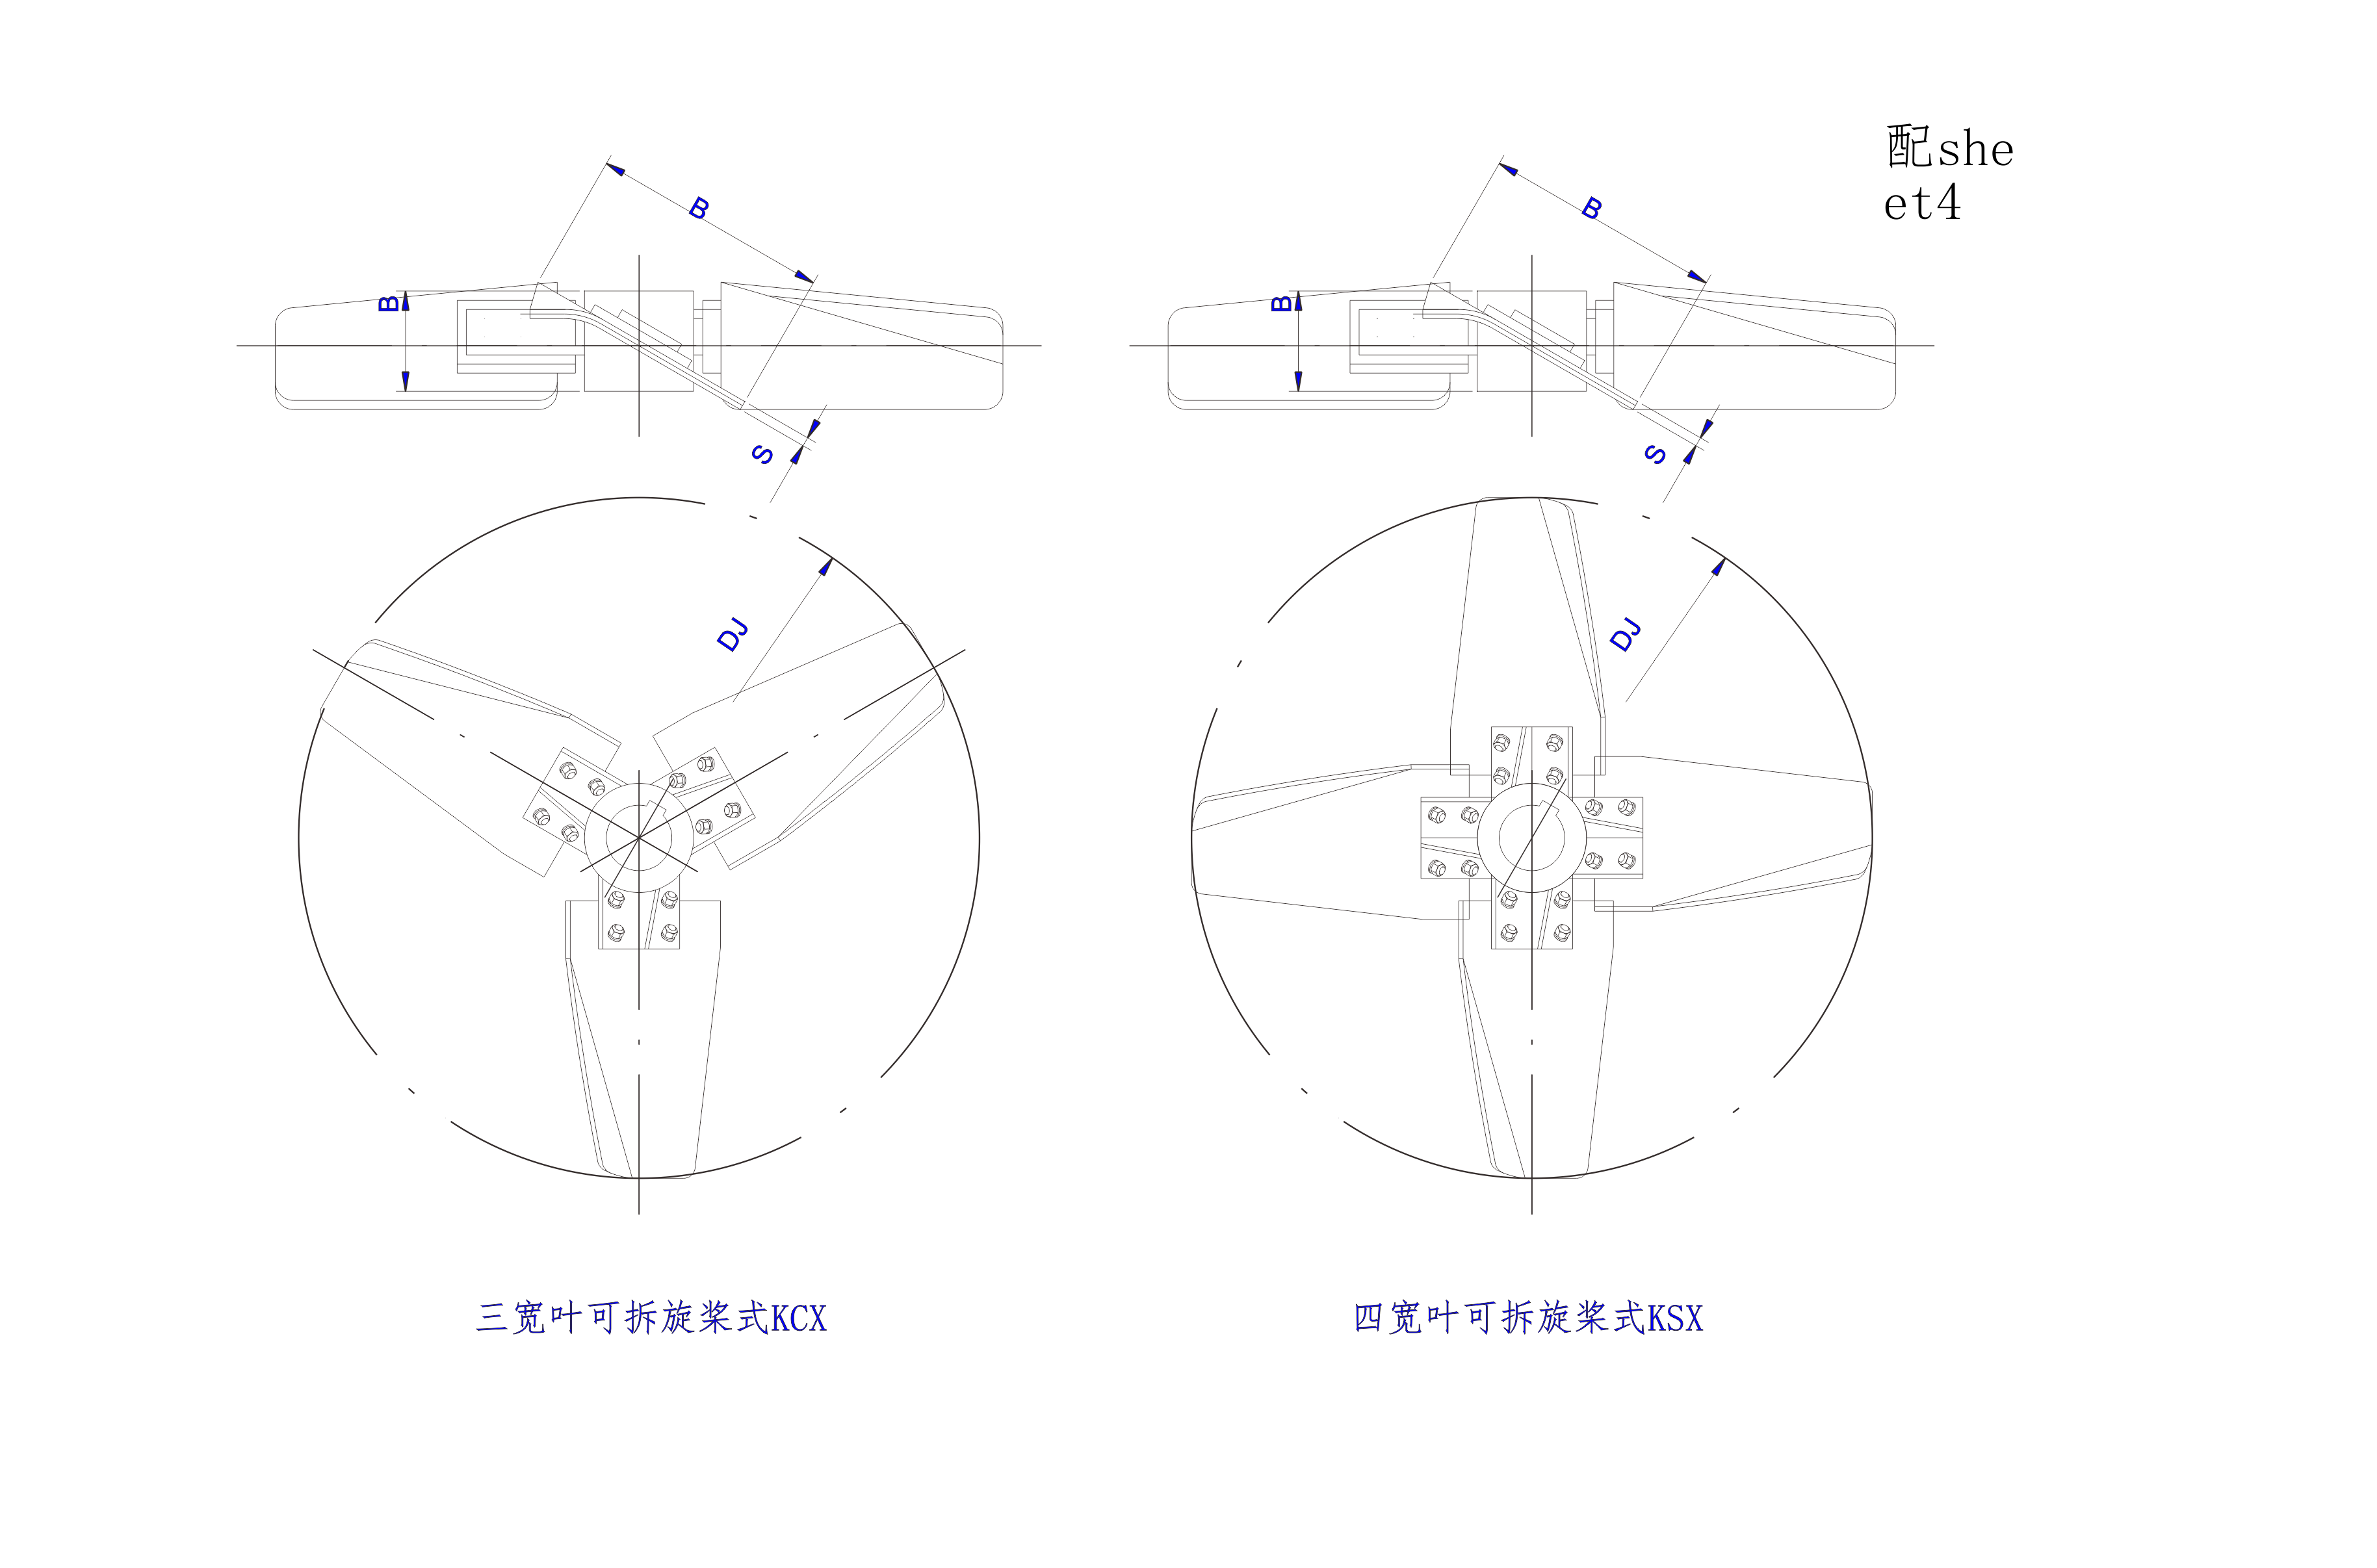   三寬葉,四寬葉旋槳式攪拌器設計圖